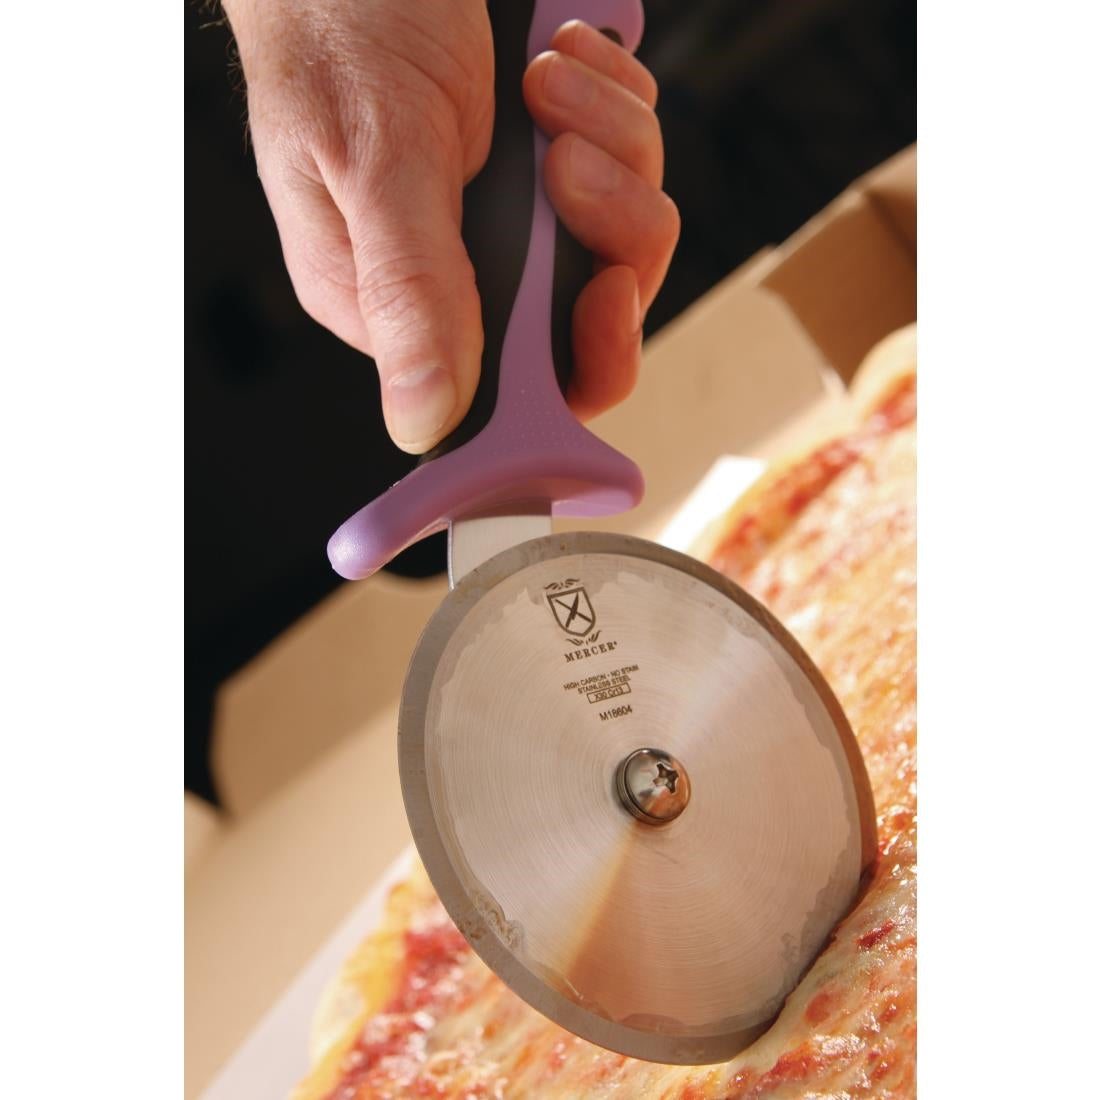 FB508 Mercer Culinary Allergen Safety Pizza Wheel 4"